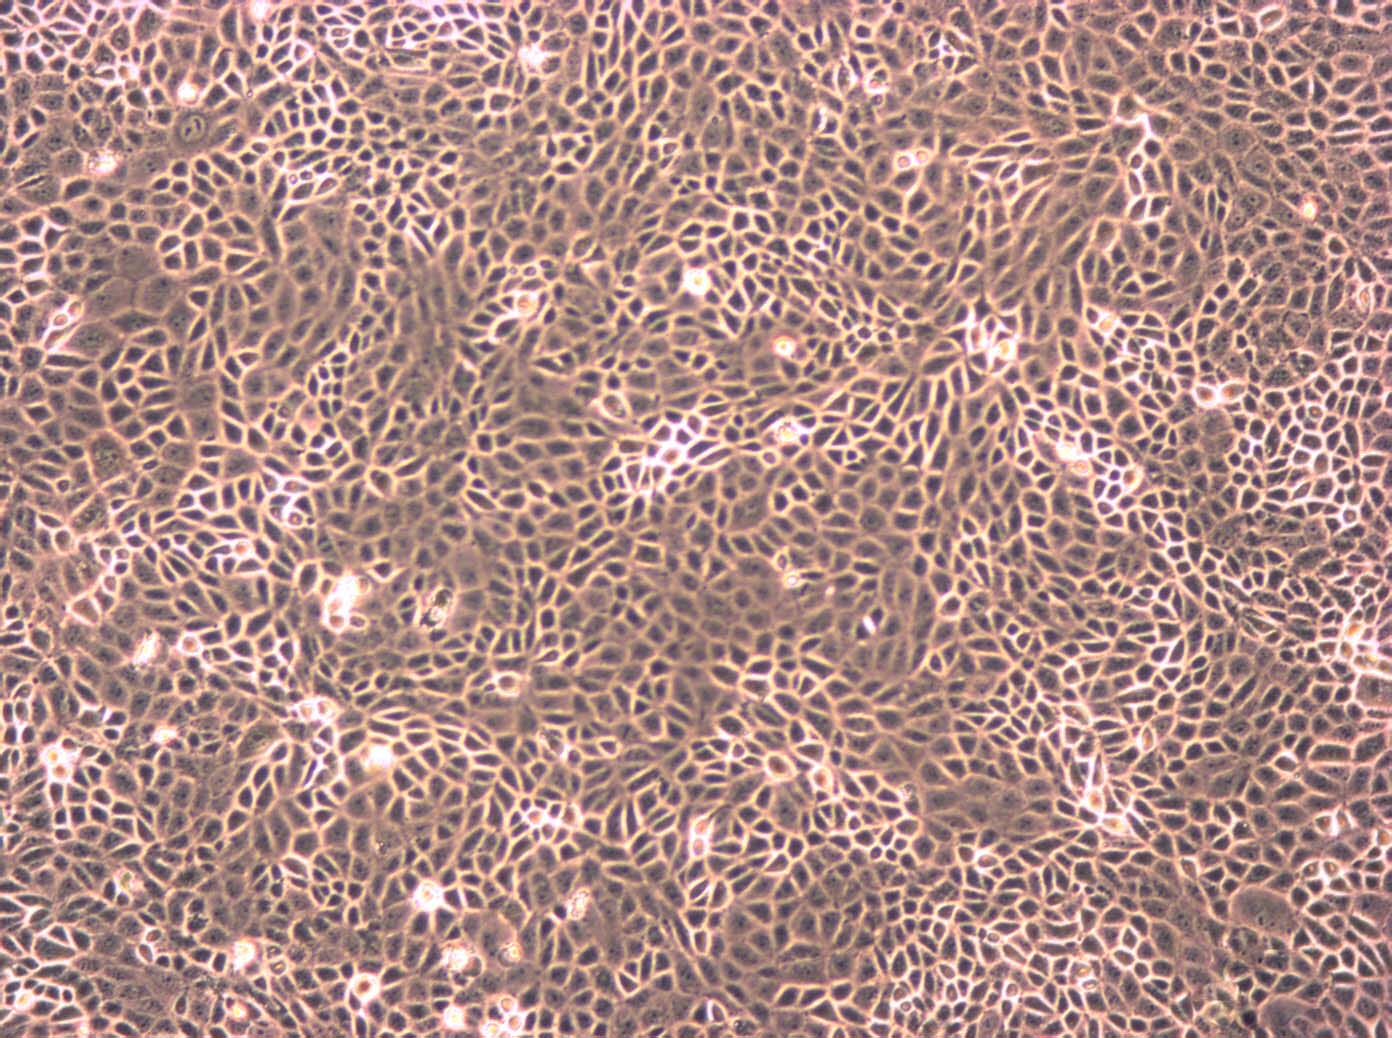 NRK-52E Cells|正常大鼠肾可传代细胞系,NRK-52E Cells